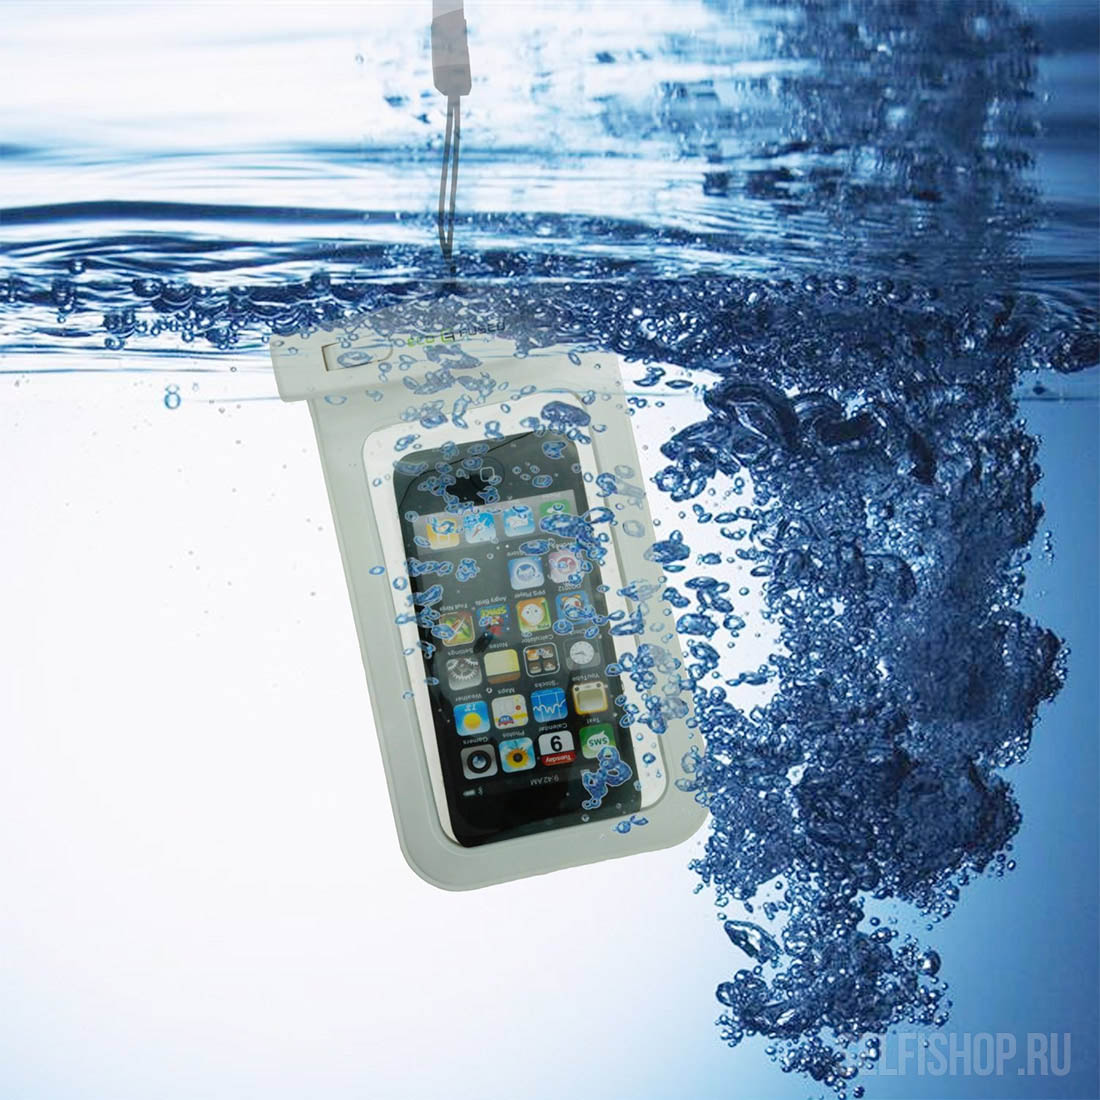 Защитный чехол от воды и песка для iPhone